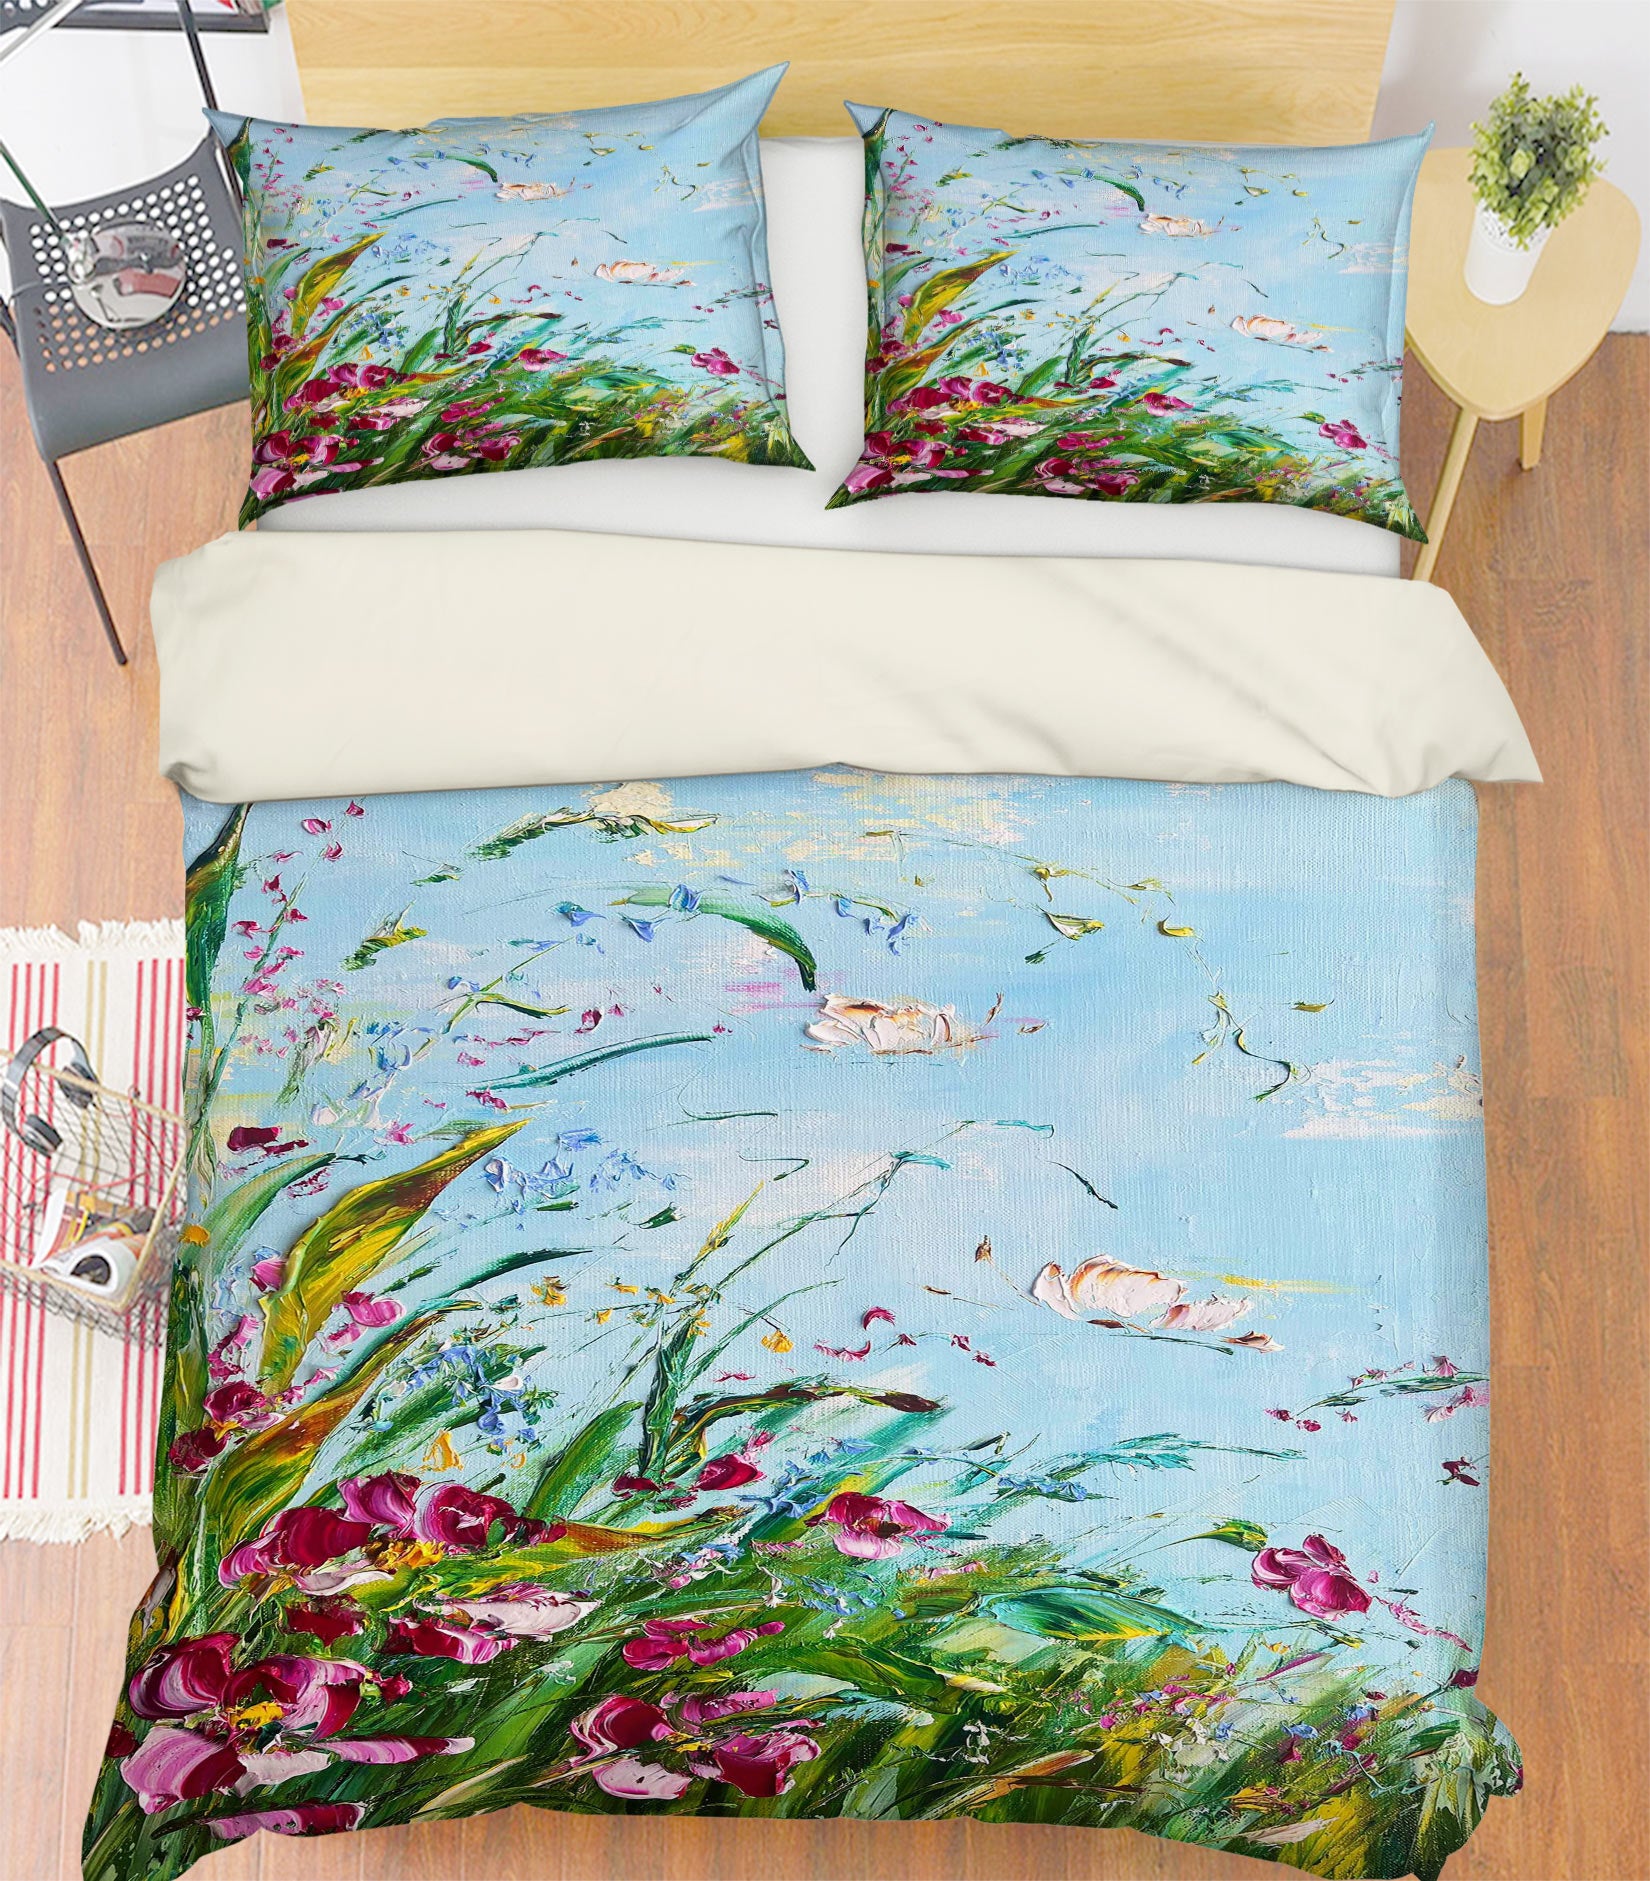 3D Garden Leaves 512 Skromova Marina Bedding Bed Pillowcases Quilt